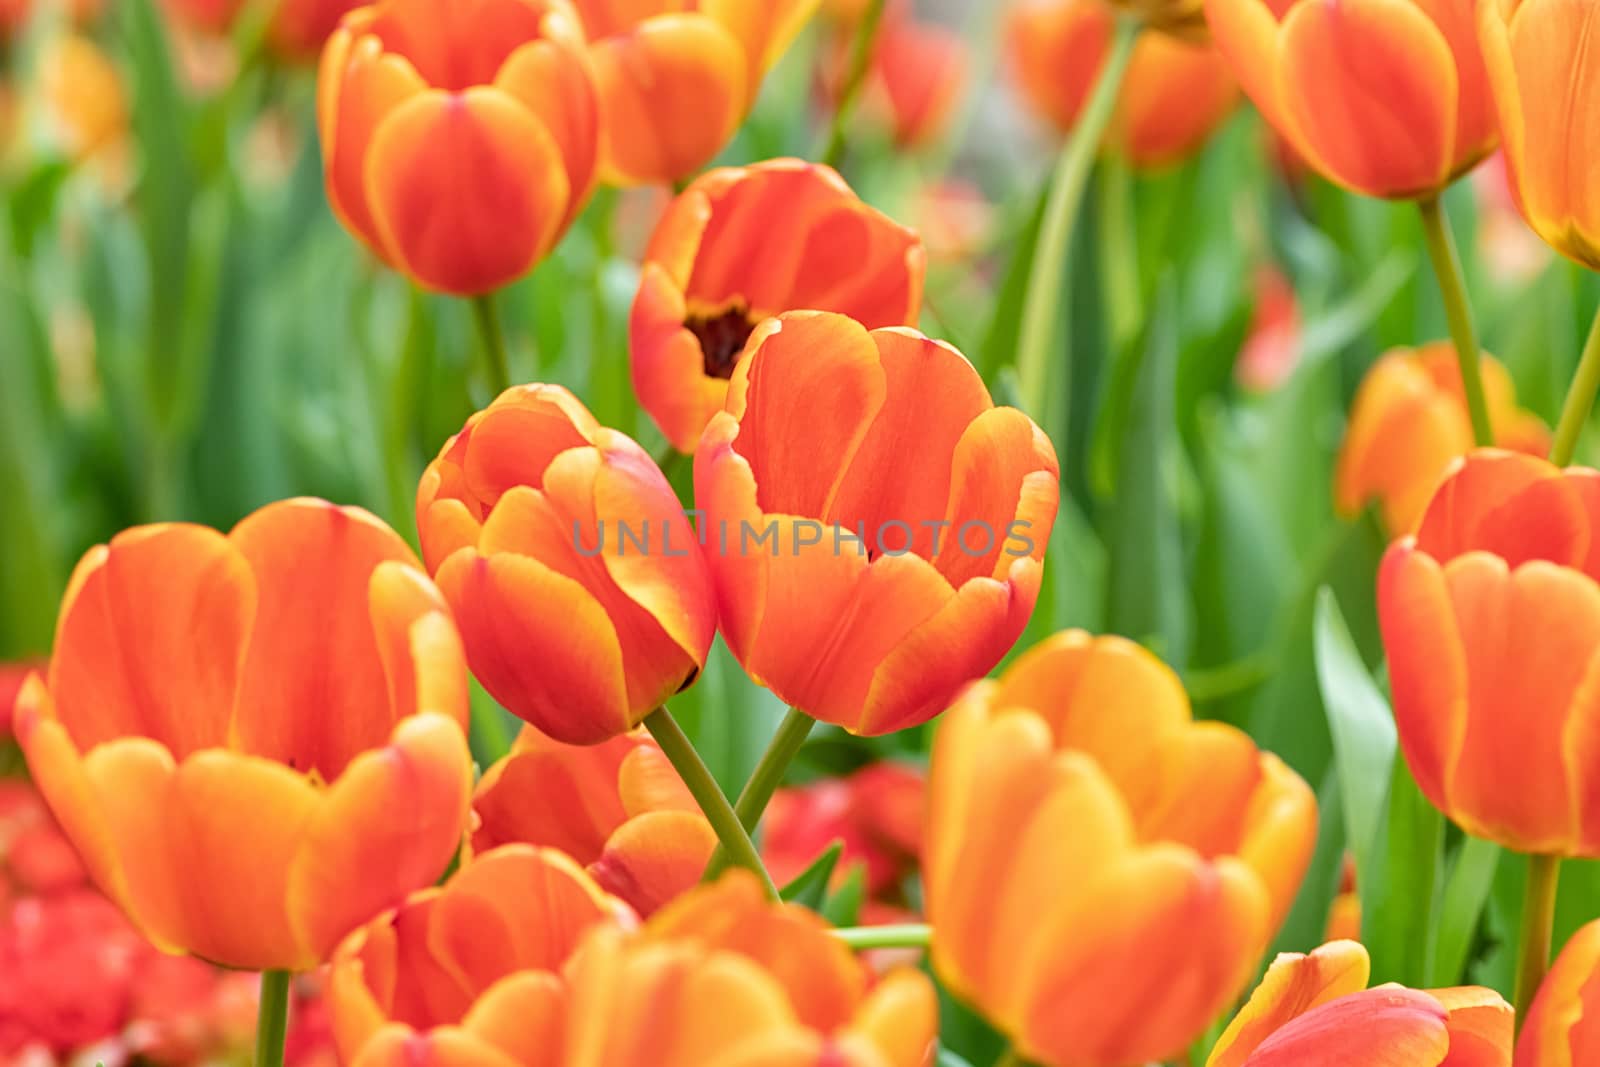 colorful of tulip flowers field in spring season, orange tulip